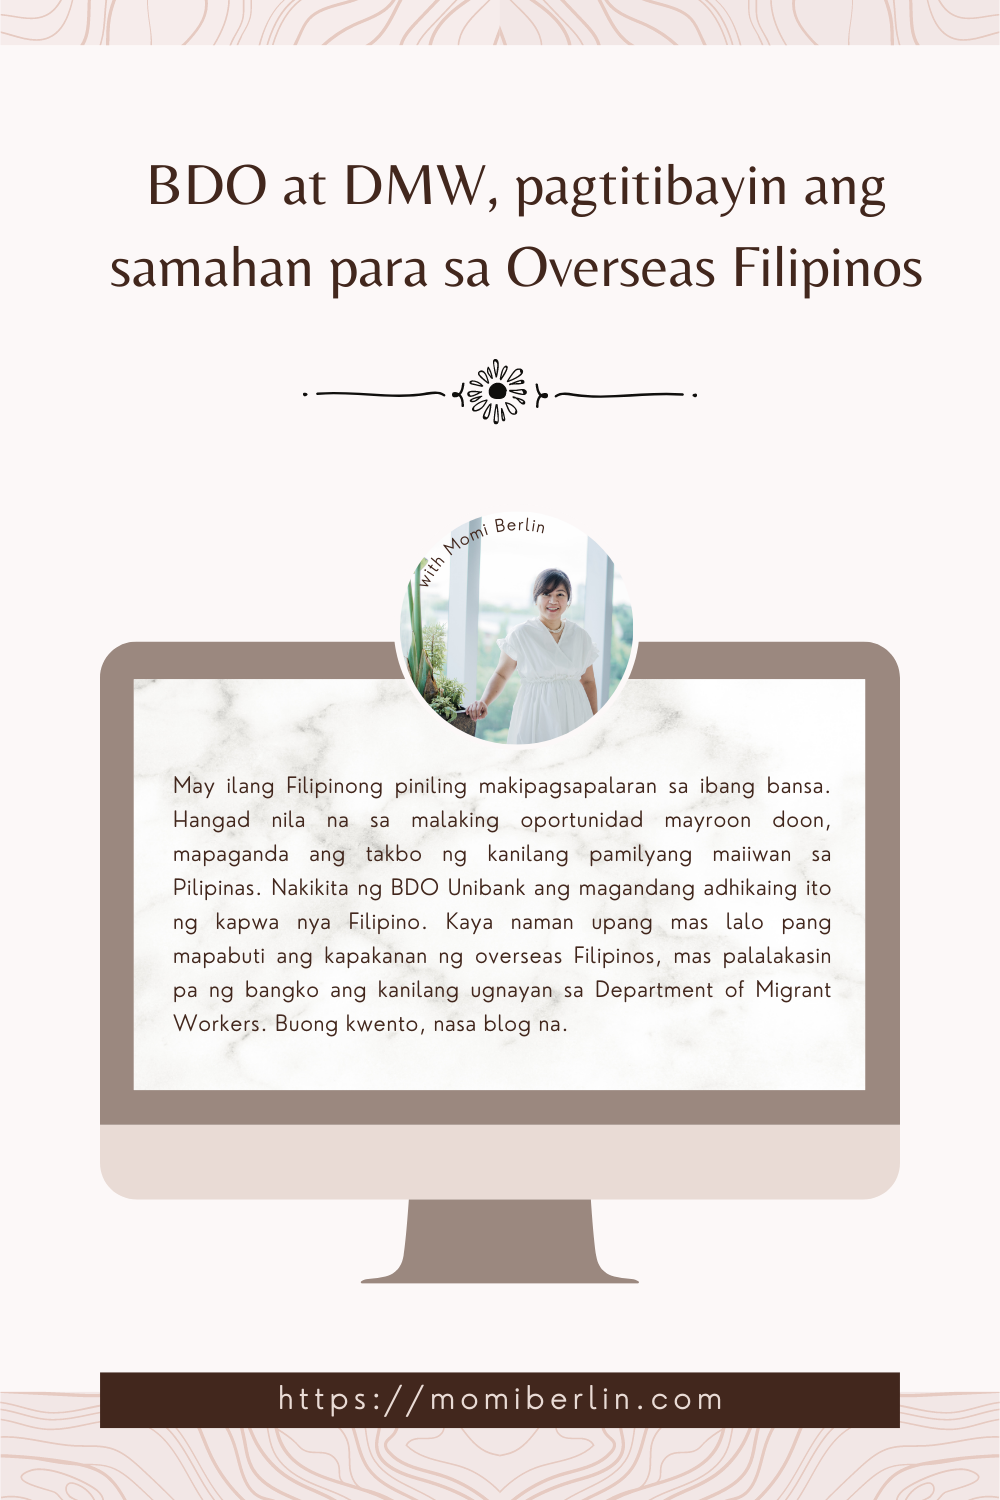 BDO at DMW, pagtitibayin ang samahan para sa Overseas Filipinos